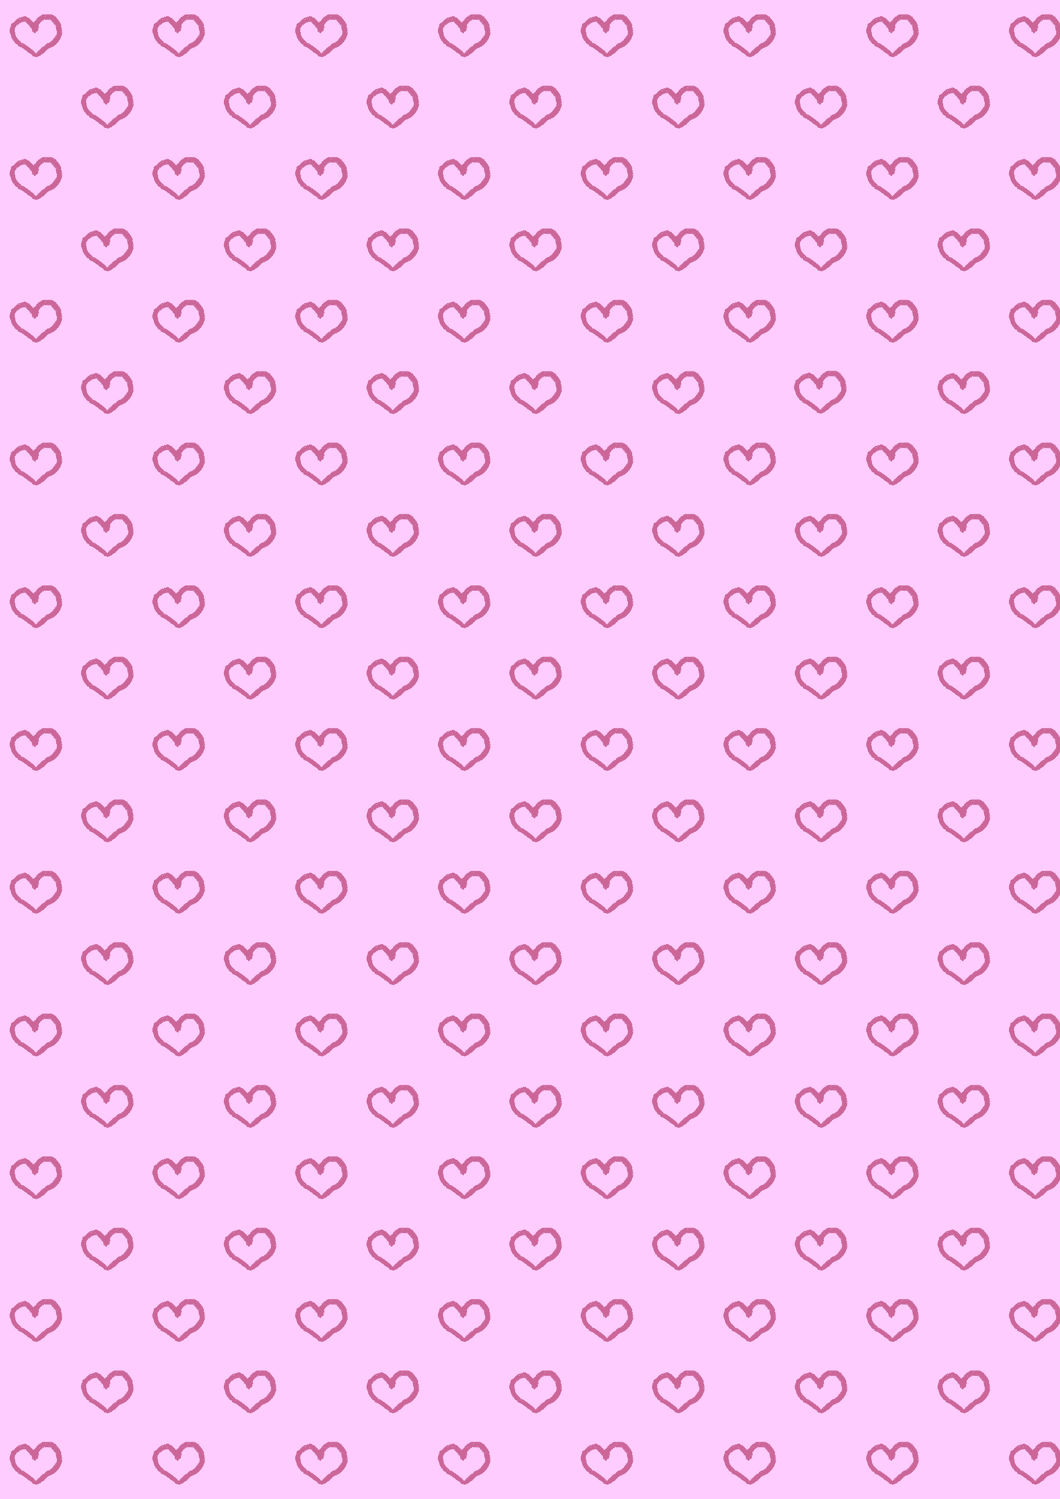 Bild mit Rosa, Herzen, Hintergrund, Kinderzimmer, Muster, Tapete, Hintergründe, pink, Herz, zart, tapetenmuster, kinderzimmertapete